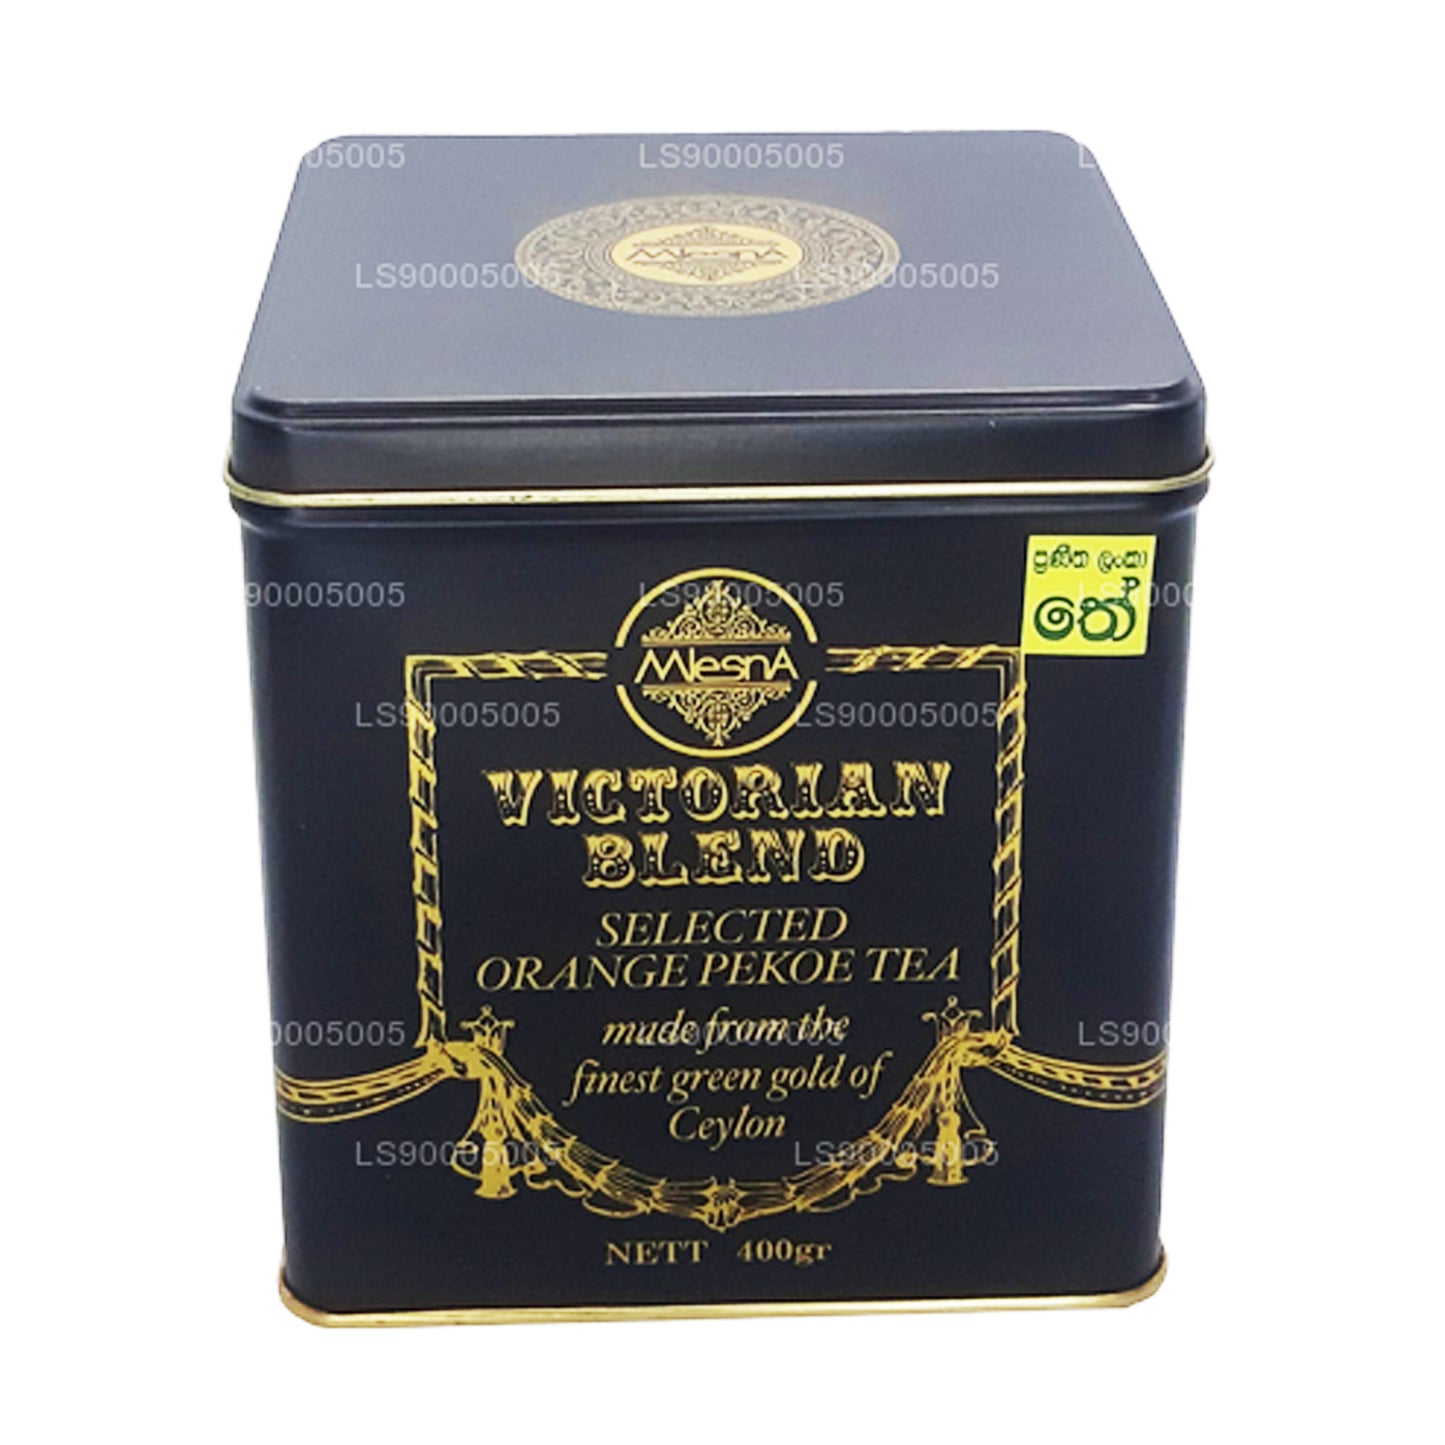 Carrito Mlesna Victorian Blend OP Leaf Tea de metal negro